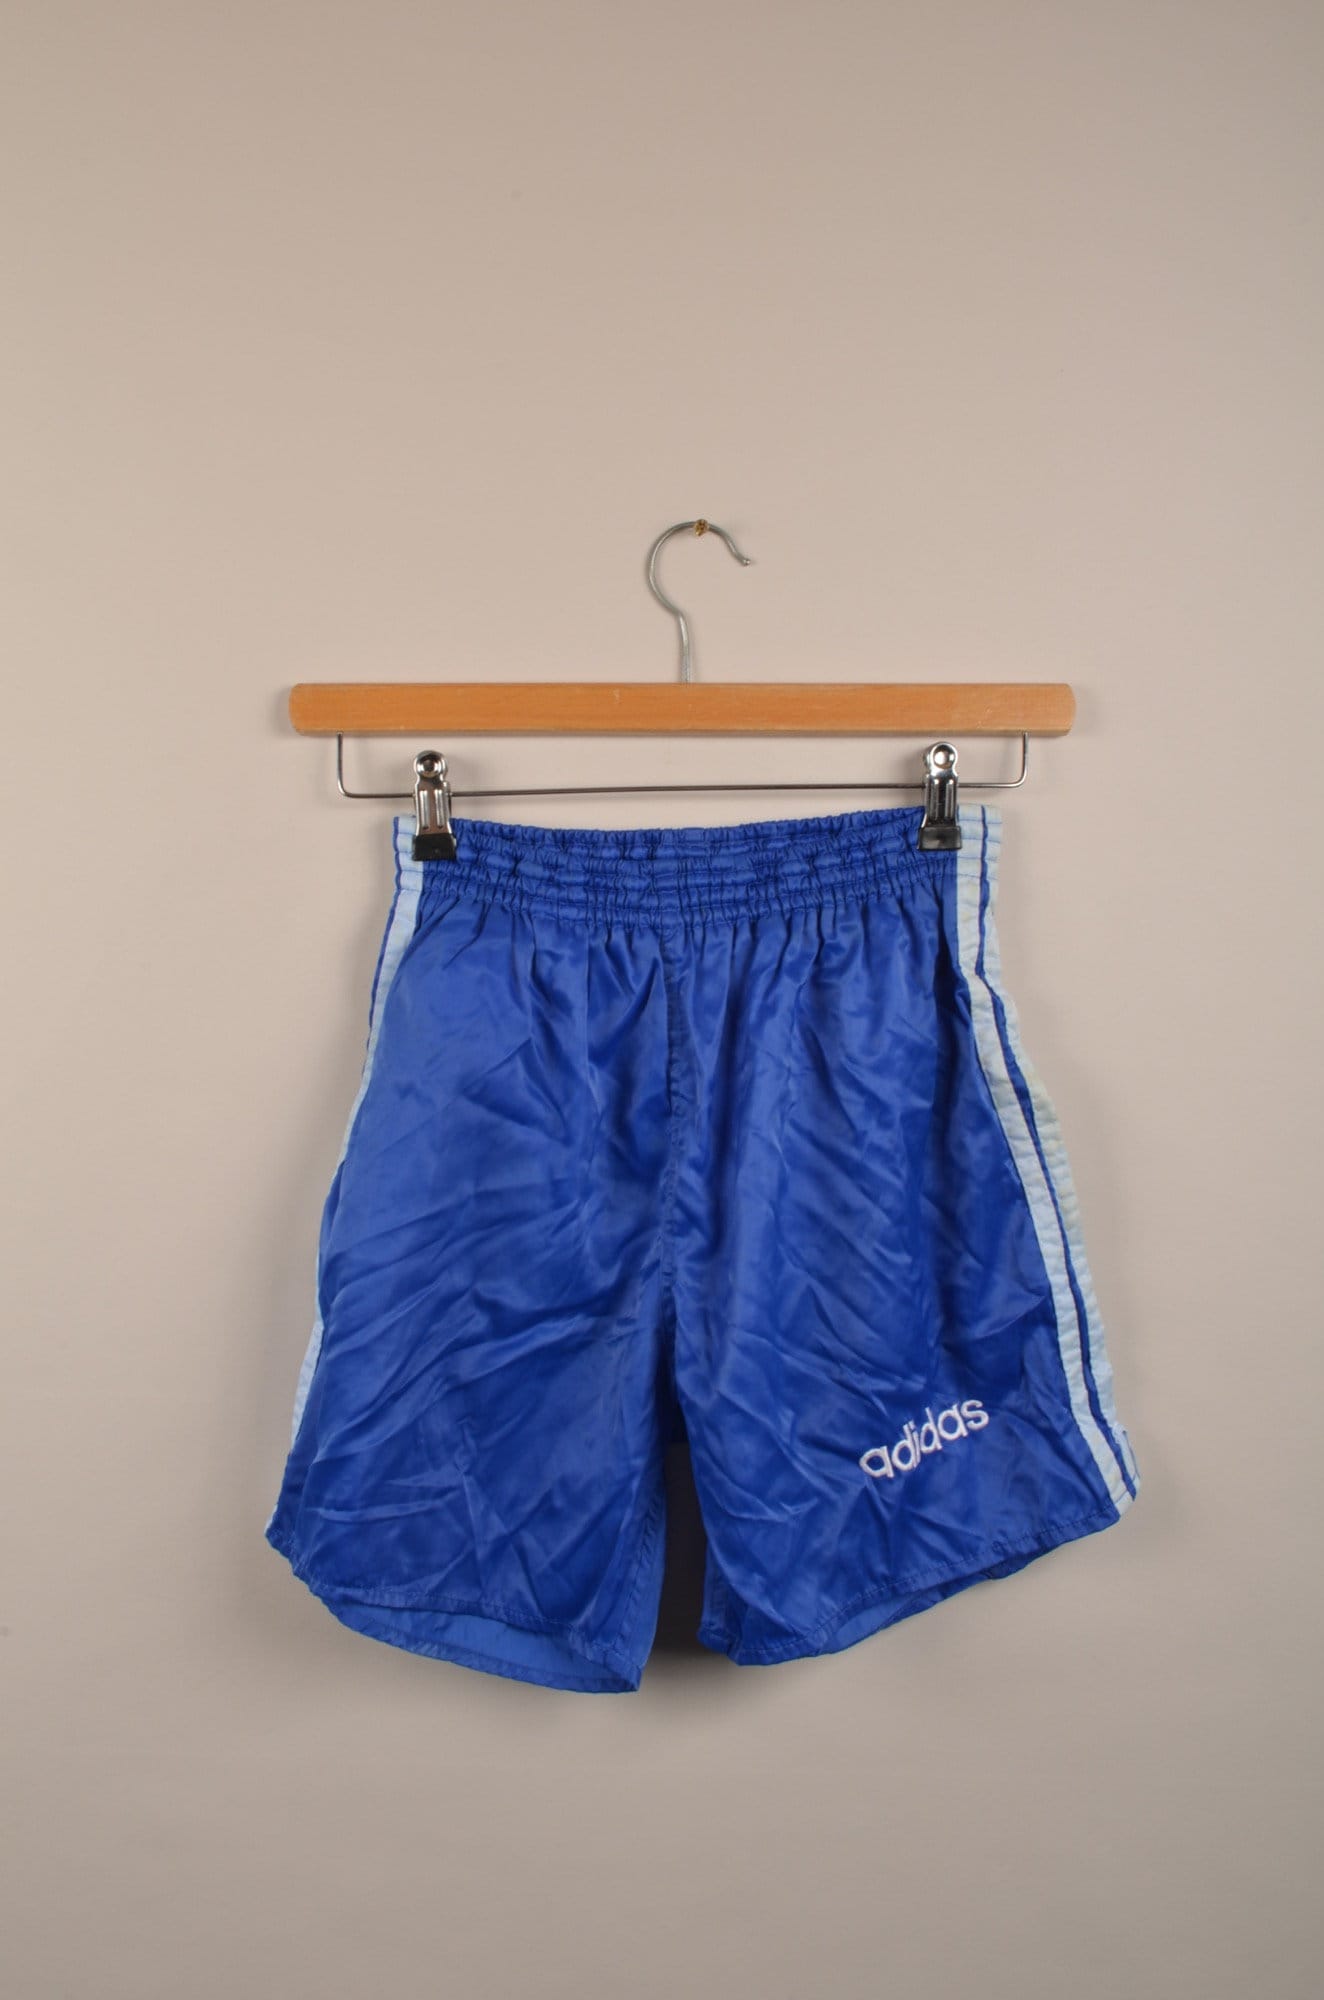 oriental Desprecio Delicioso Vintage Blue Adidas Nylon Sprinter Shorts Vintage Adidas - Etsy